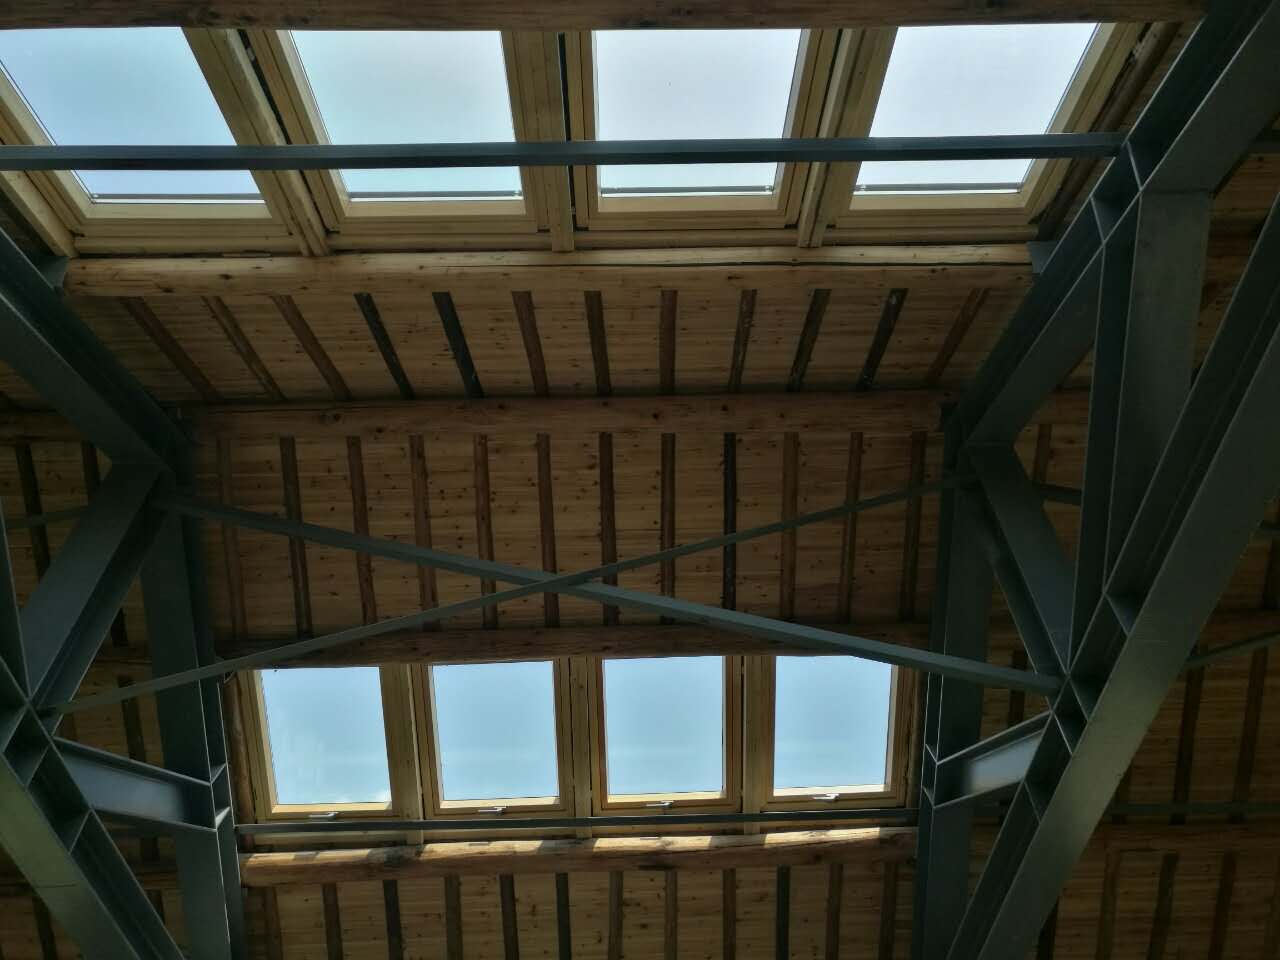 设计师将建筑与环境融合在一起,为建筑屋顶设计了大量斜屋顶天窗